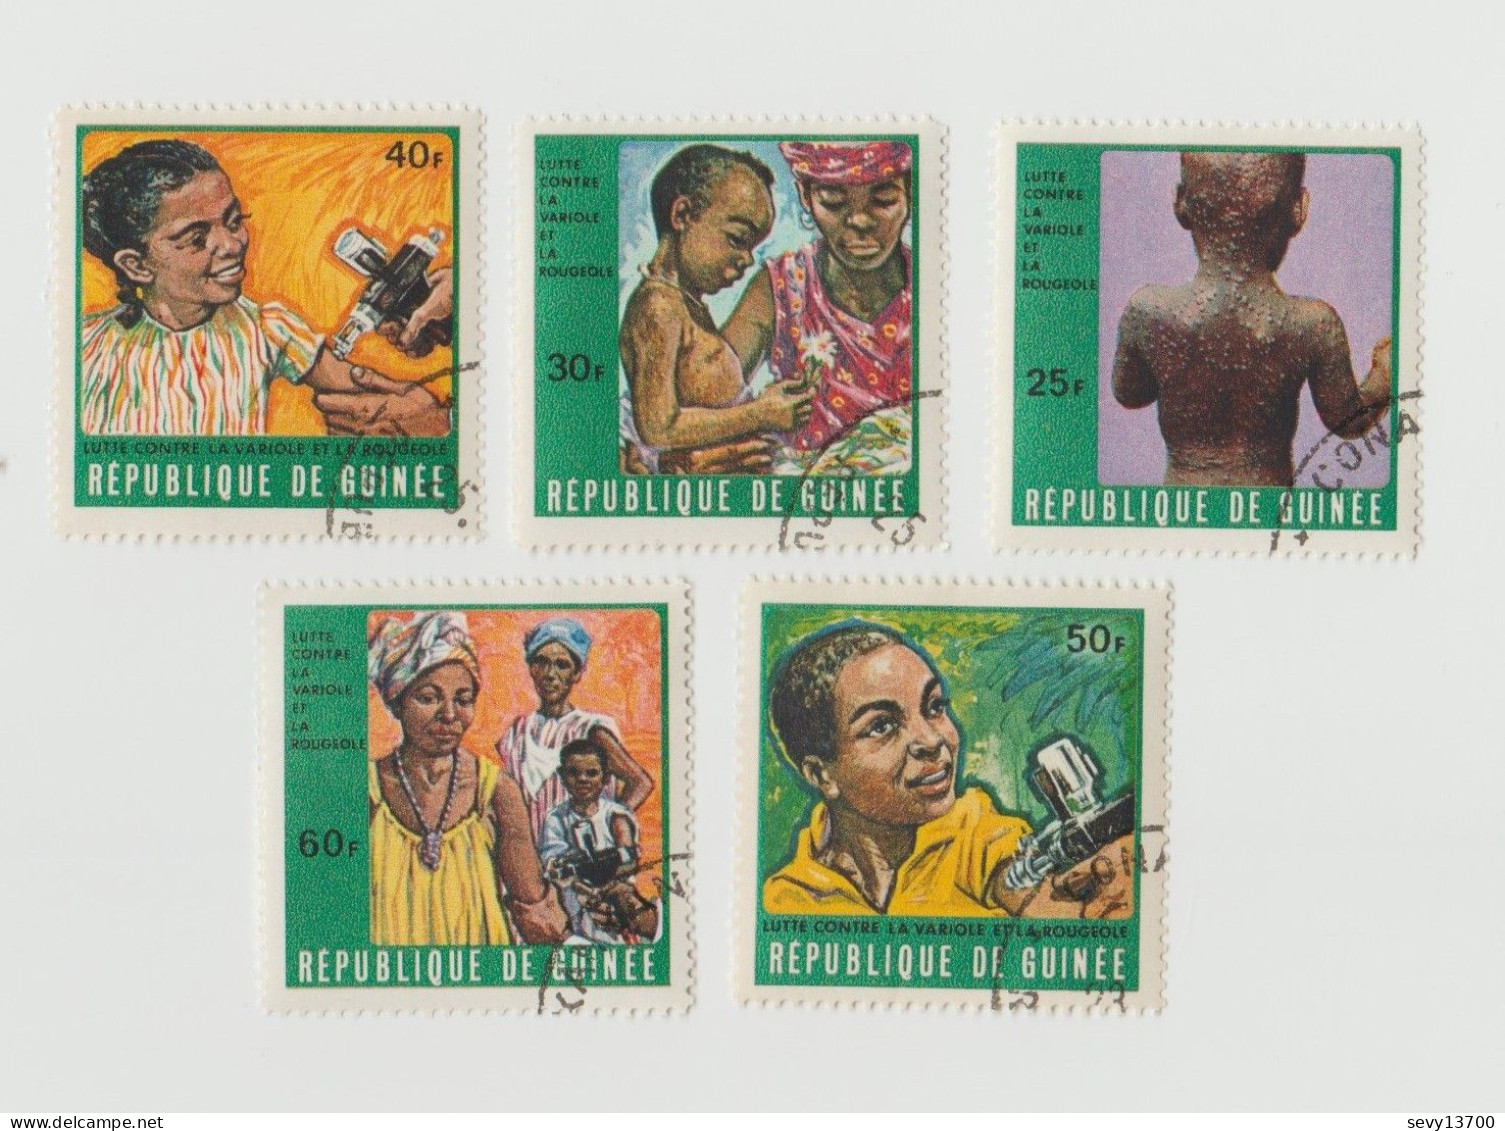 République de Guinée Lot 47 timbres Traditions Unicef Croix Rouge Foot Ball